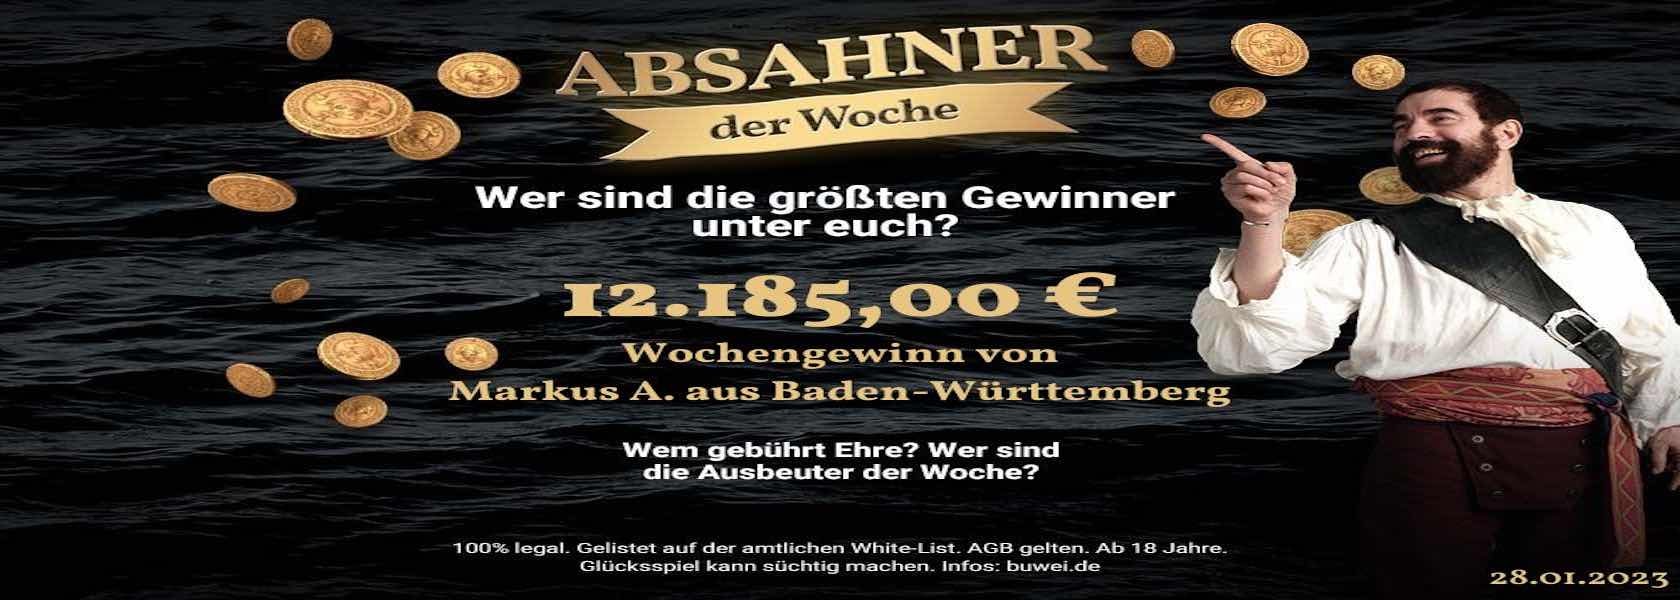 absahner-der-woche-28012023-1680x600